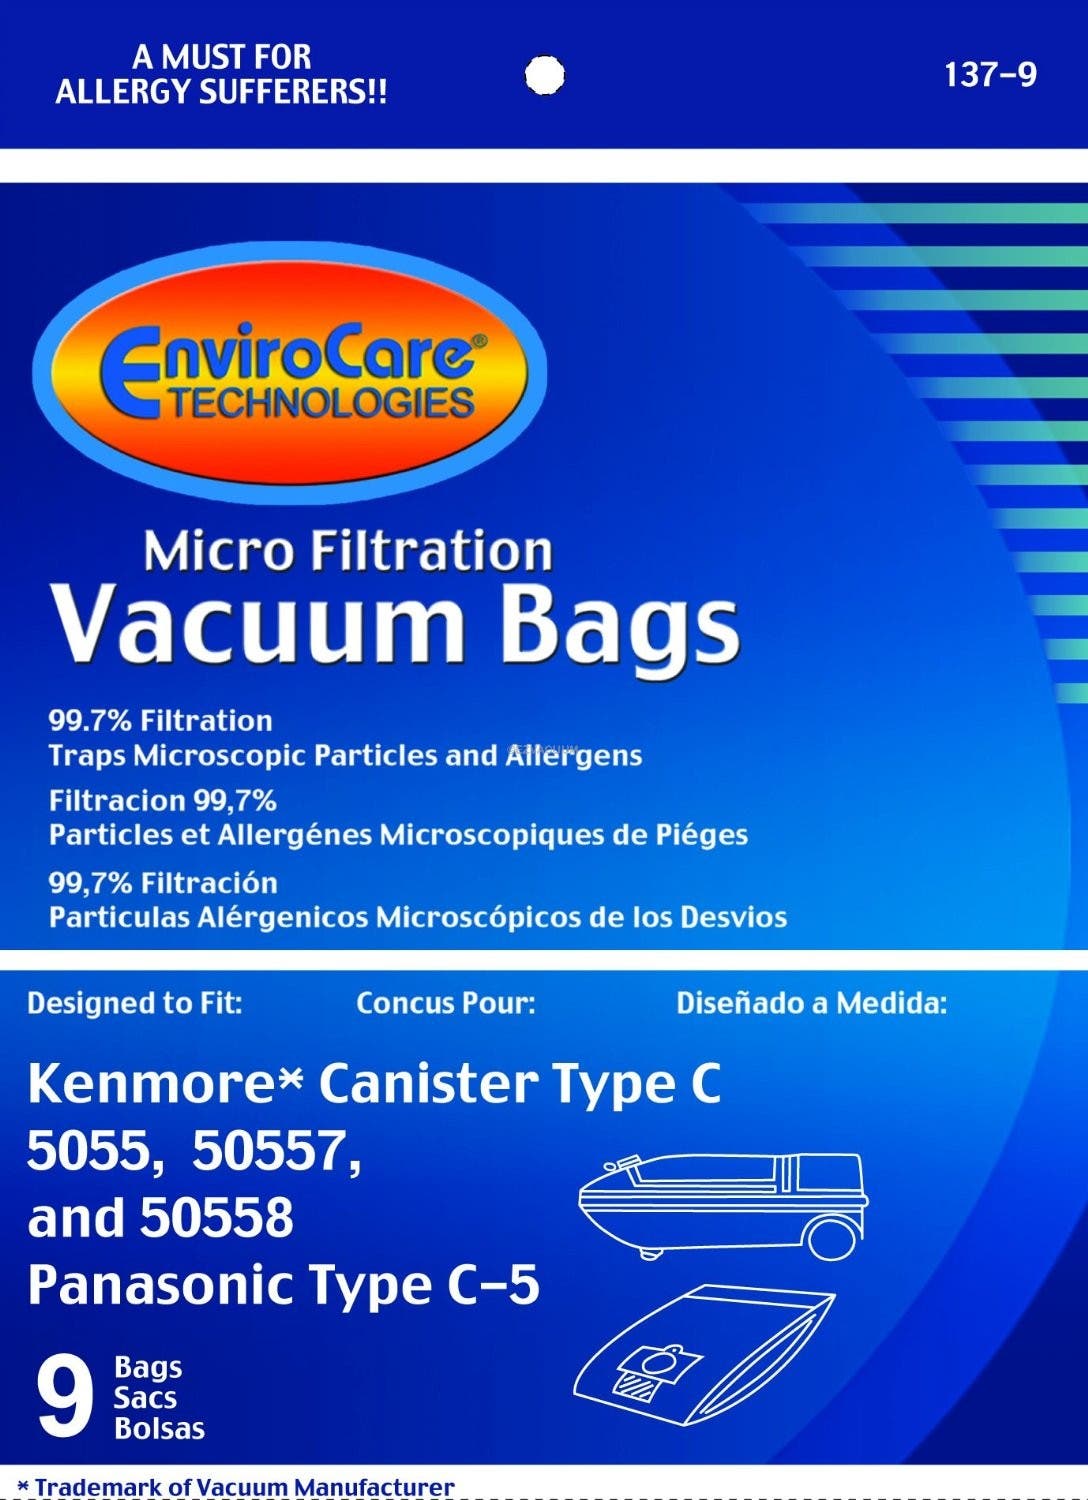 Panasonic C5 bags